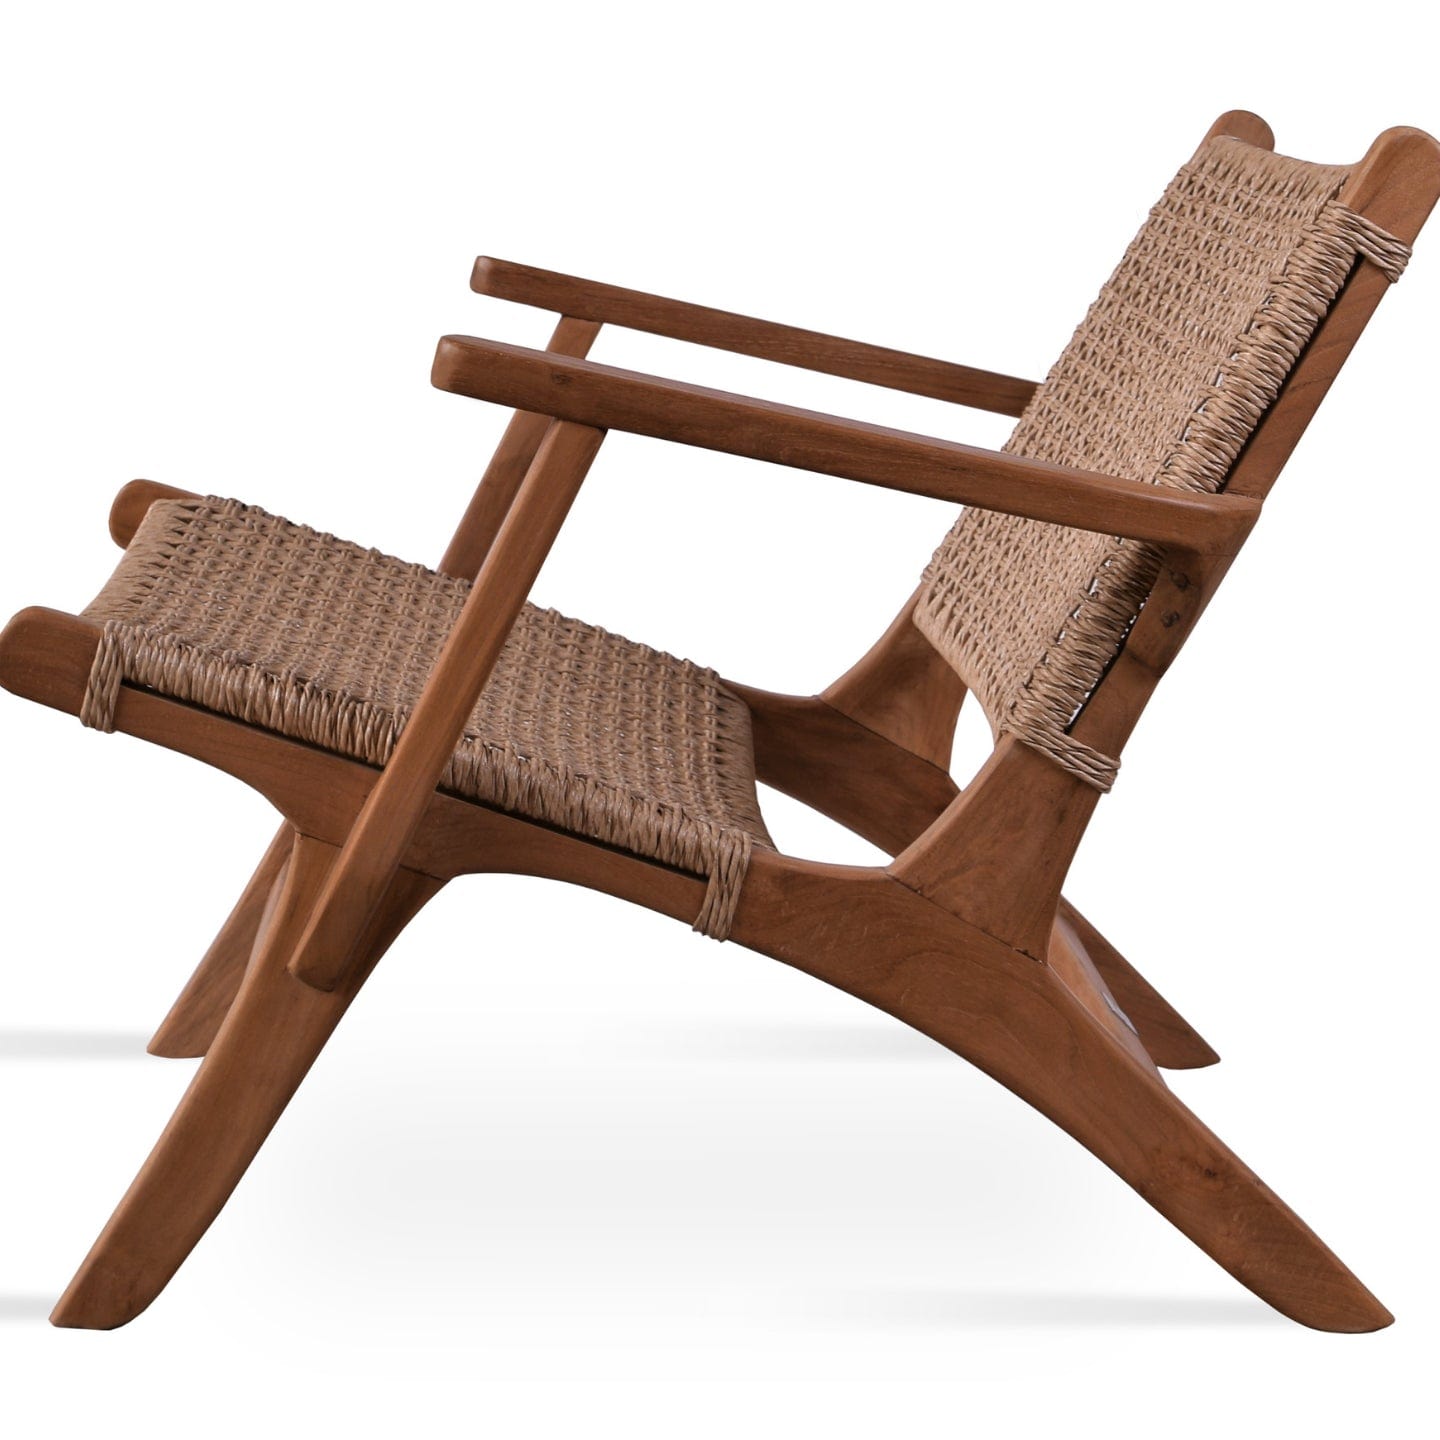 sohoConcept Outdoor Chairs Calava Teak Wood Patio Armchair | Wicker Rattan Outdoor Lounge Chair